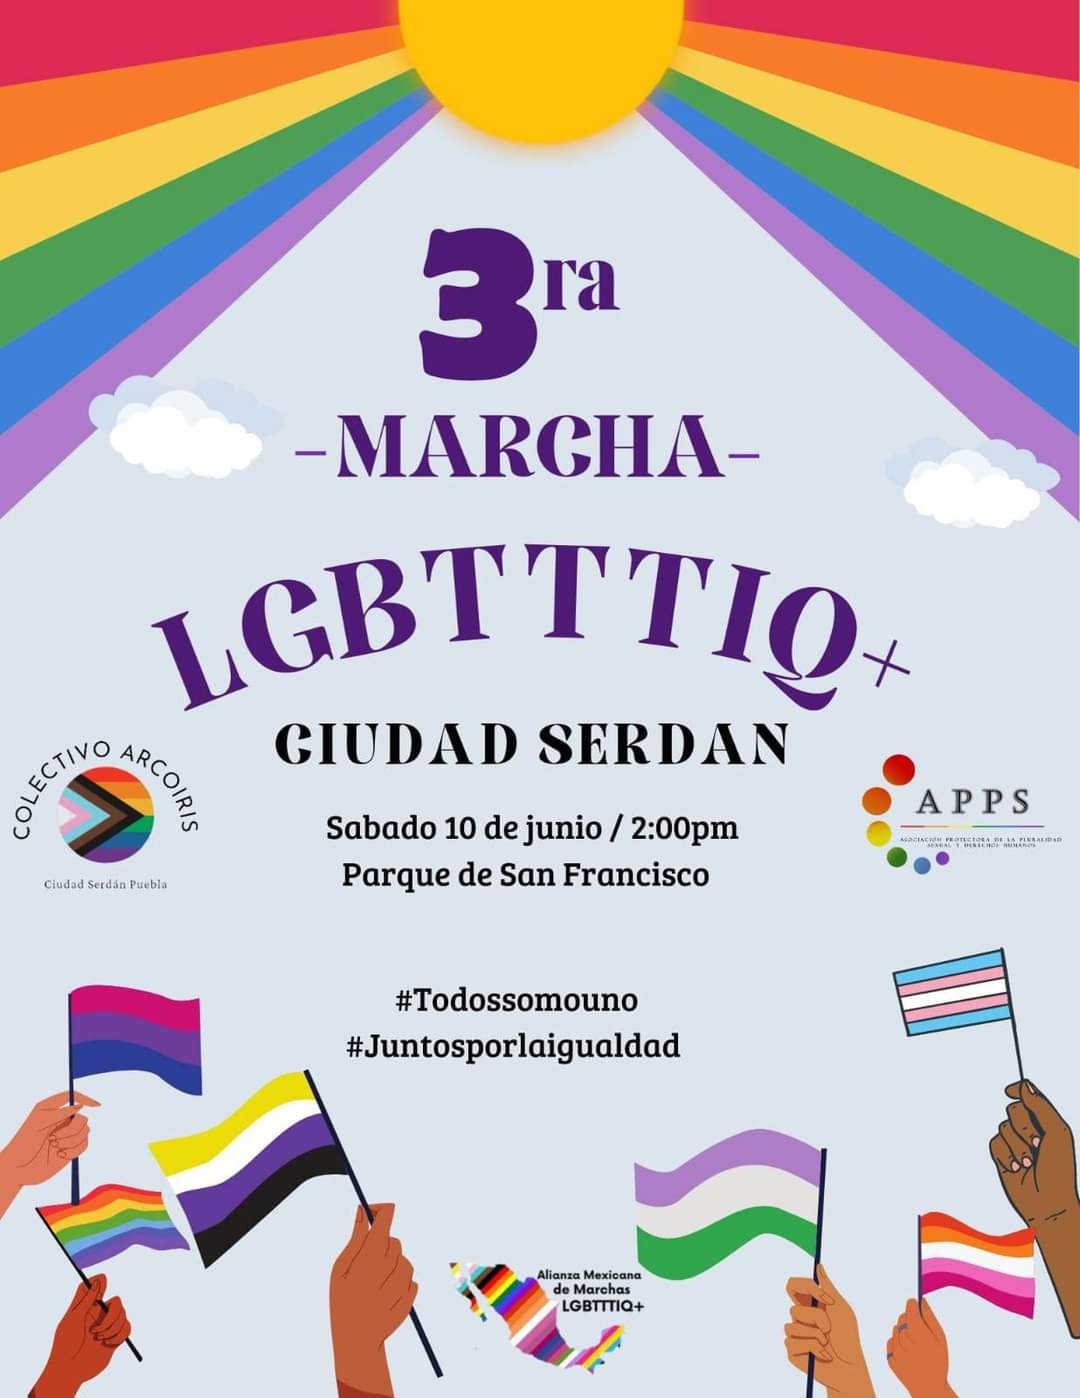 Este sábado en Ciudad Serdán la marcha LGBT+